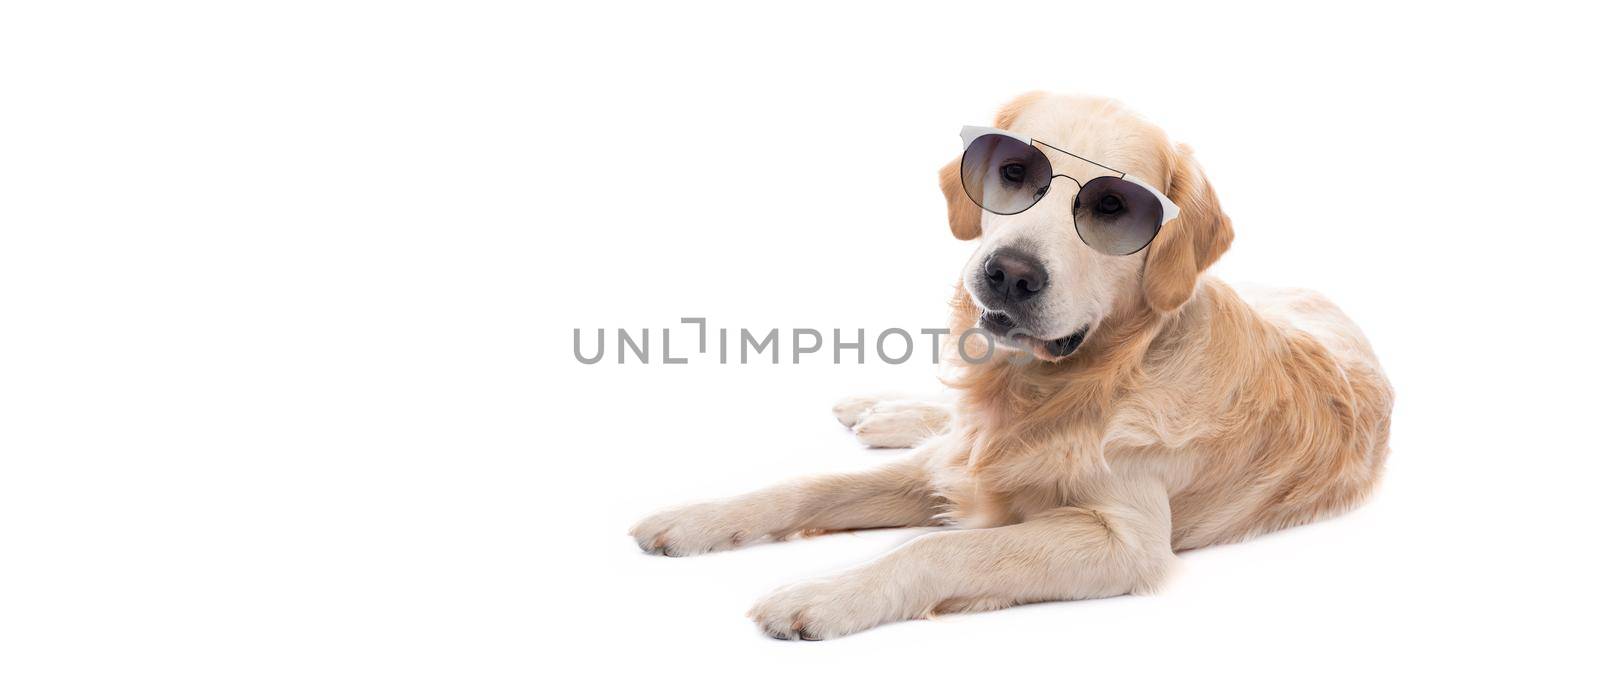 Golden retriever dog in sunglasses resting by GekaSkr